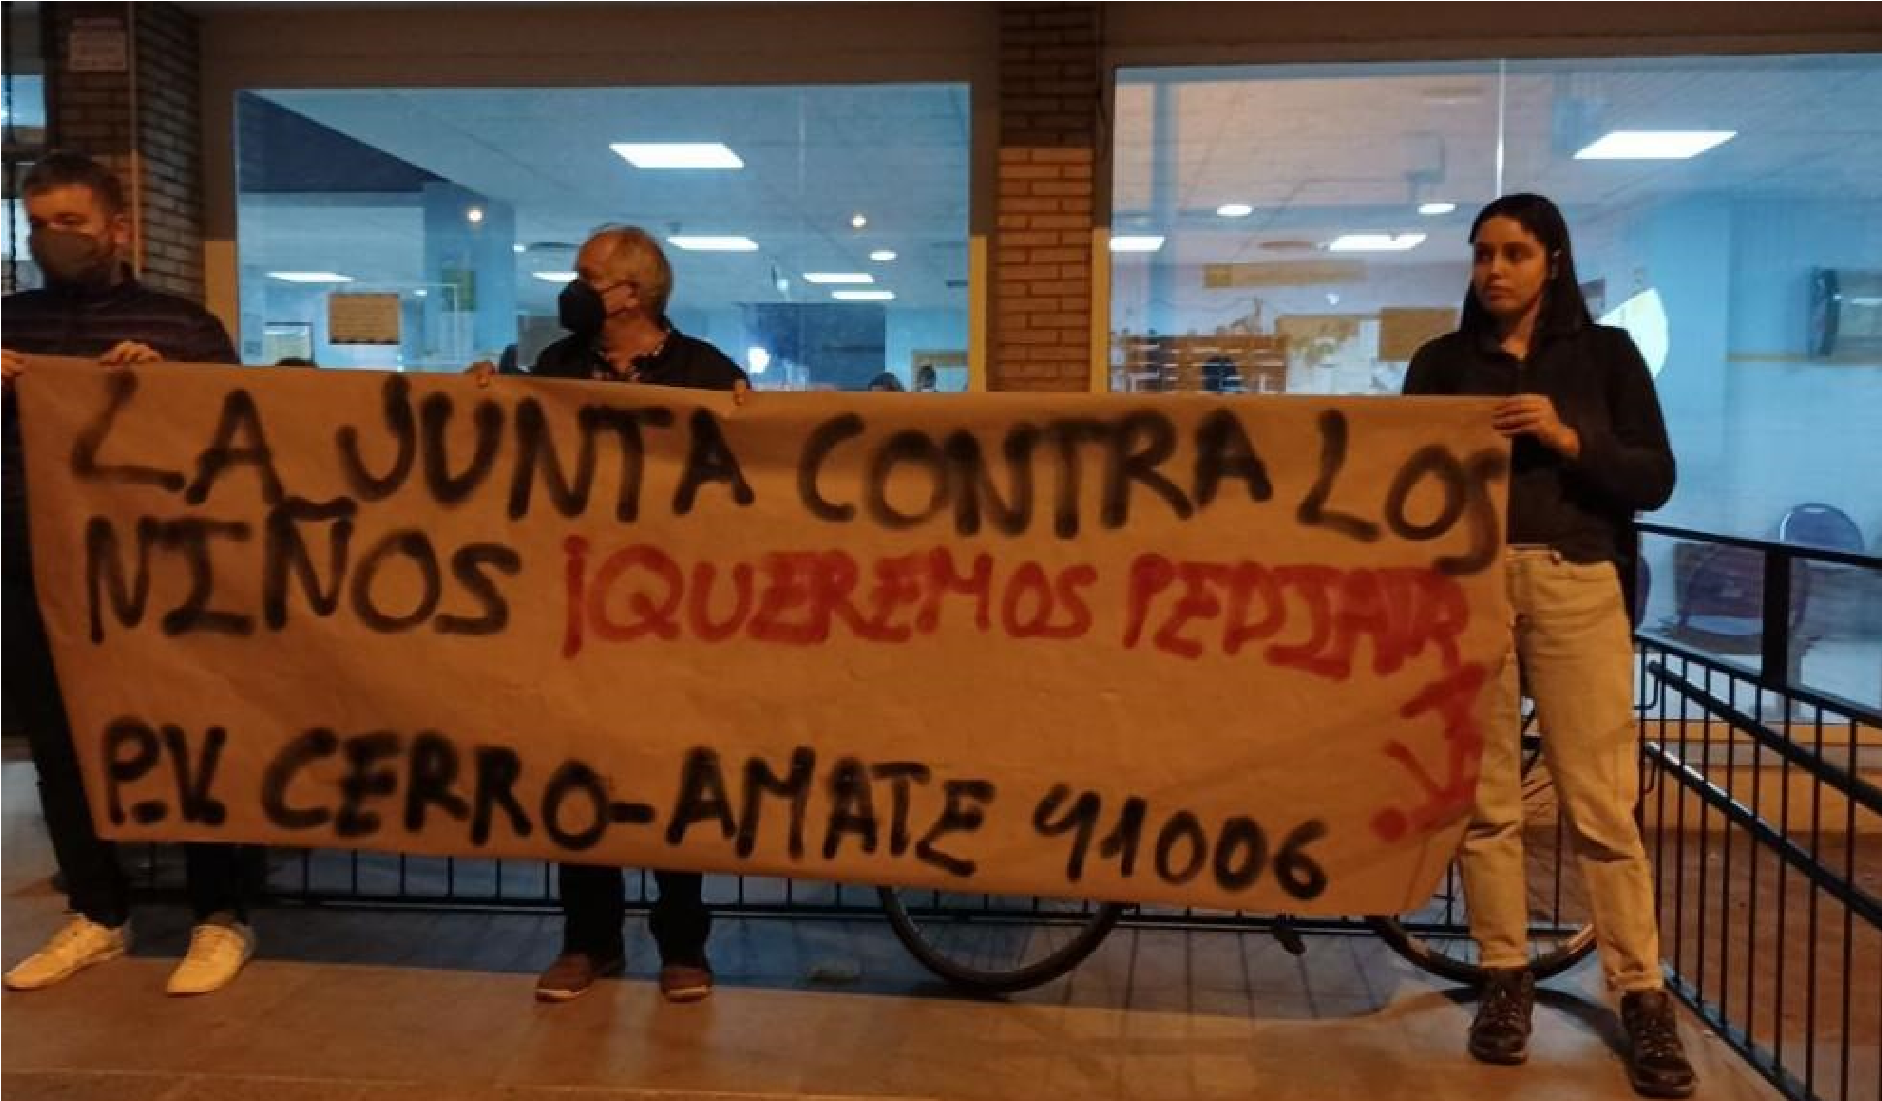 El pasado lunes 13 de diciembre tuvo lugar en el Cerro Amate, barrio obrero de Sevilla, una concentración a las puertas del centro de salud, en la cual se protestaba…